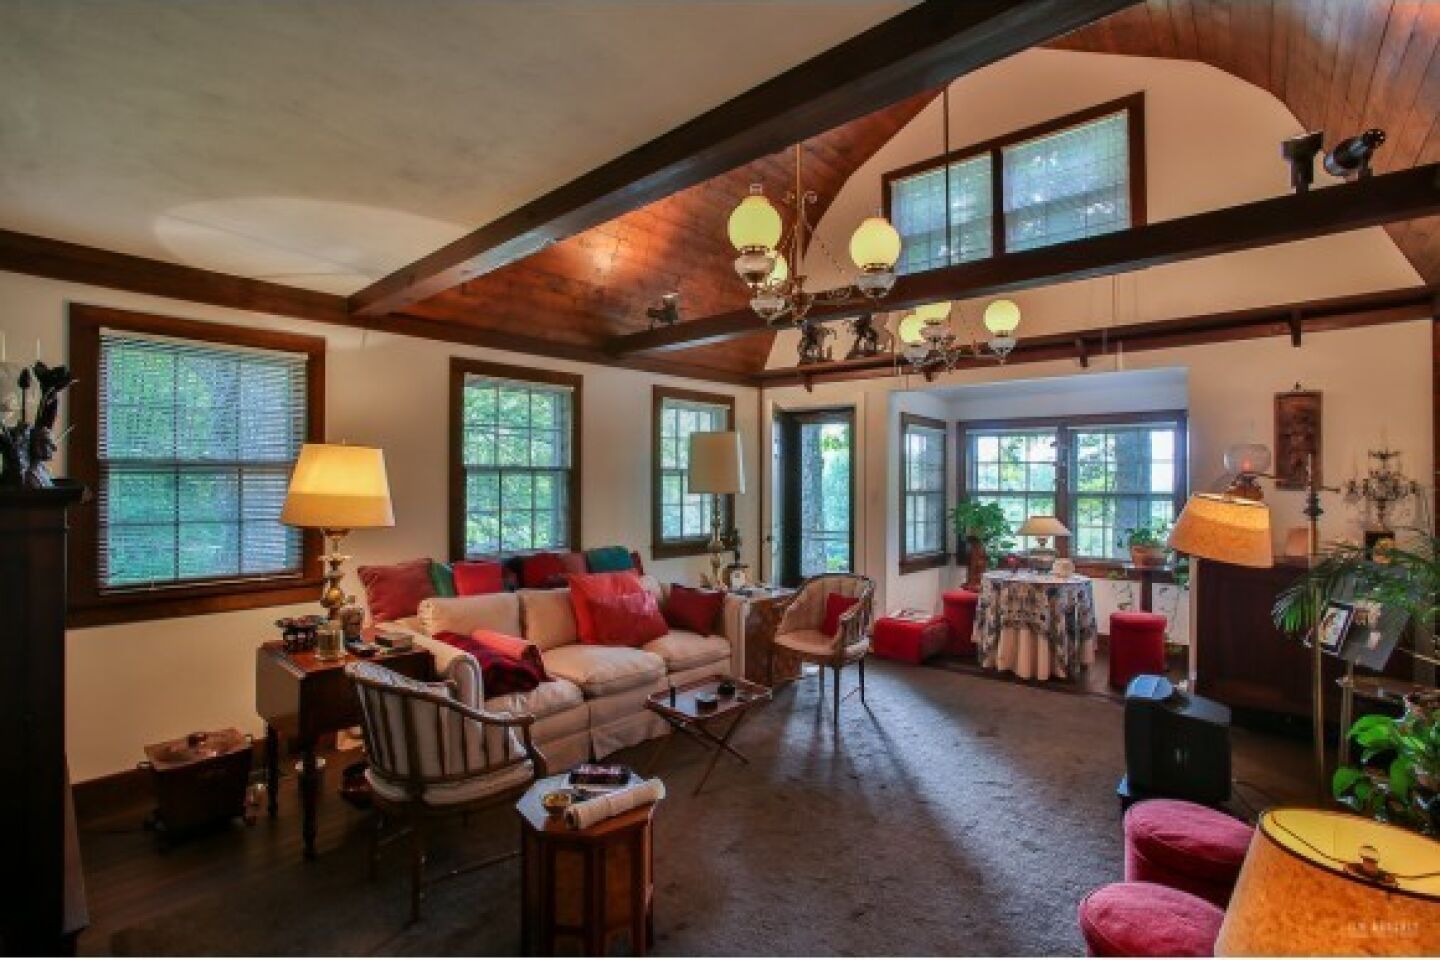 J.D. Salinger's home for sale - living room